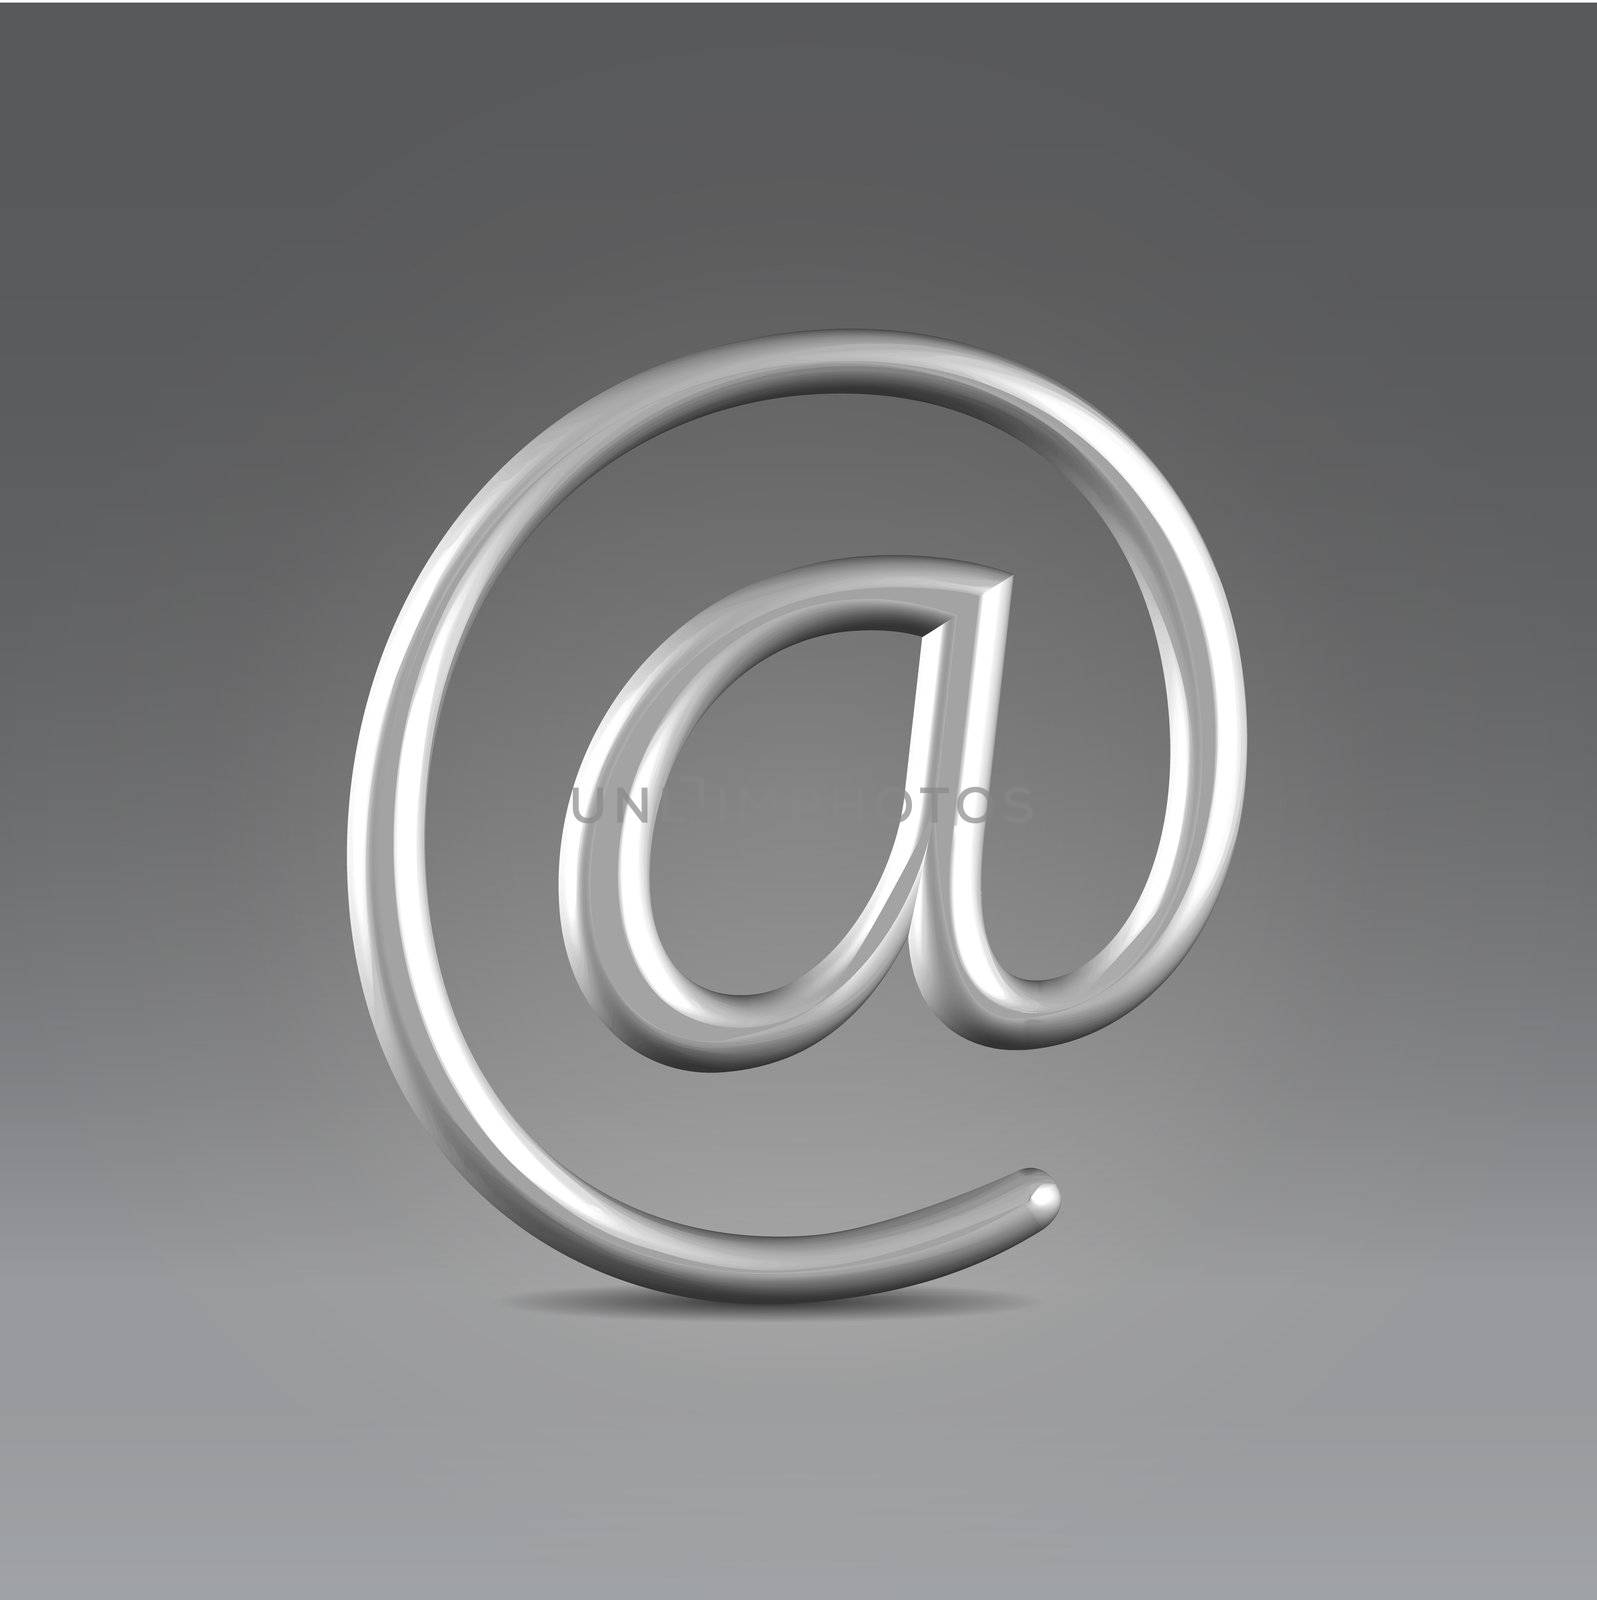 Silver shining metallic email symbol hanging in space backlit closeup studio shot